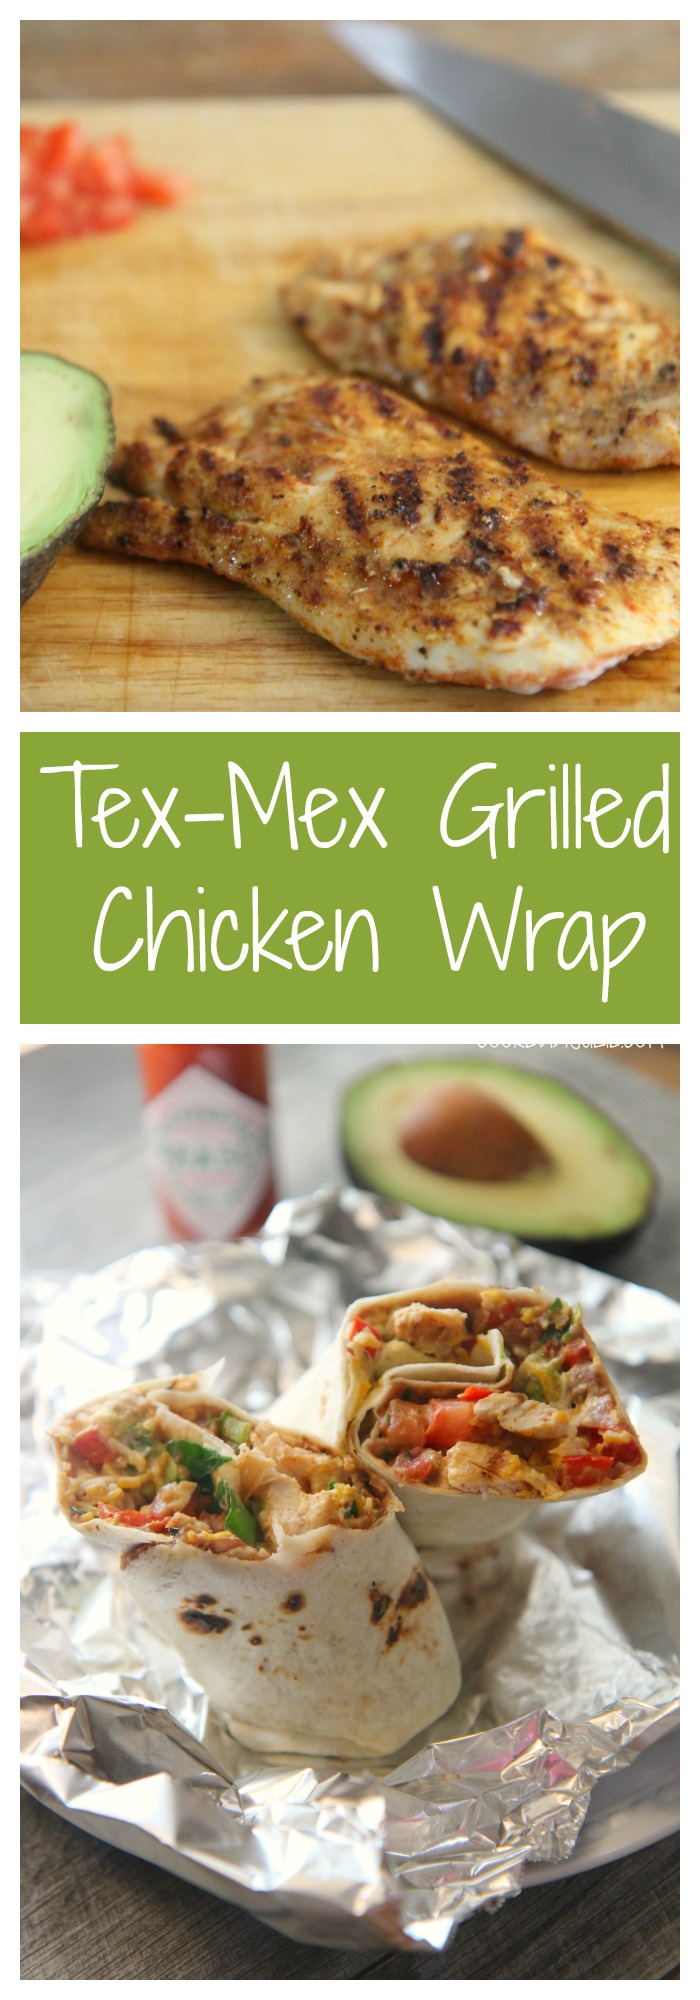 Tex-Mex Grilled Chicken Wrap Recipe